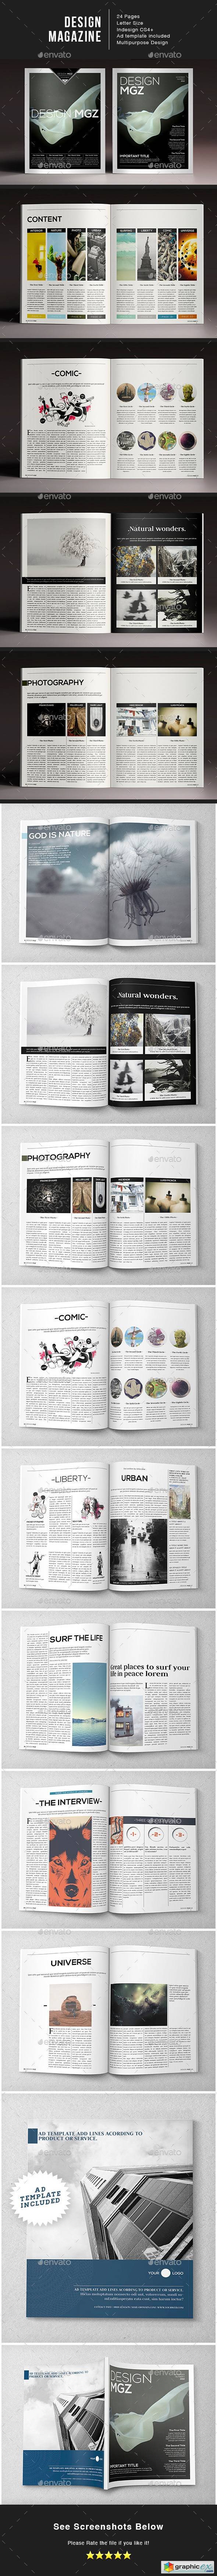 Design Magazine 1 Indesign Template